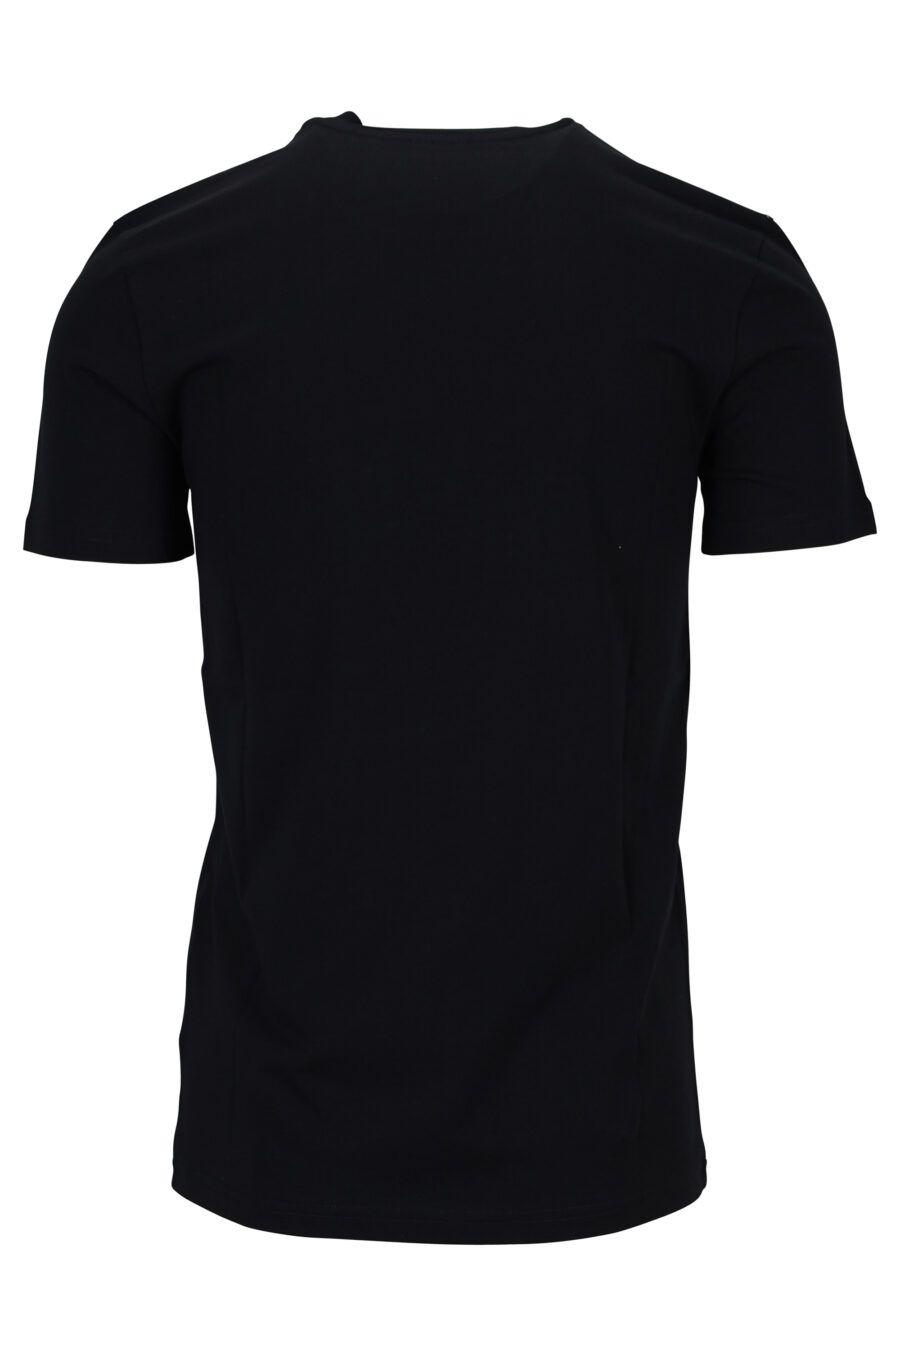 Schwarzes Bio-Baumwoll-T-Shirt mit weißem Maxilogo - 889316648973 1